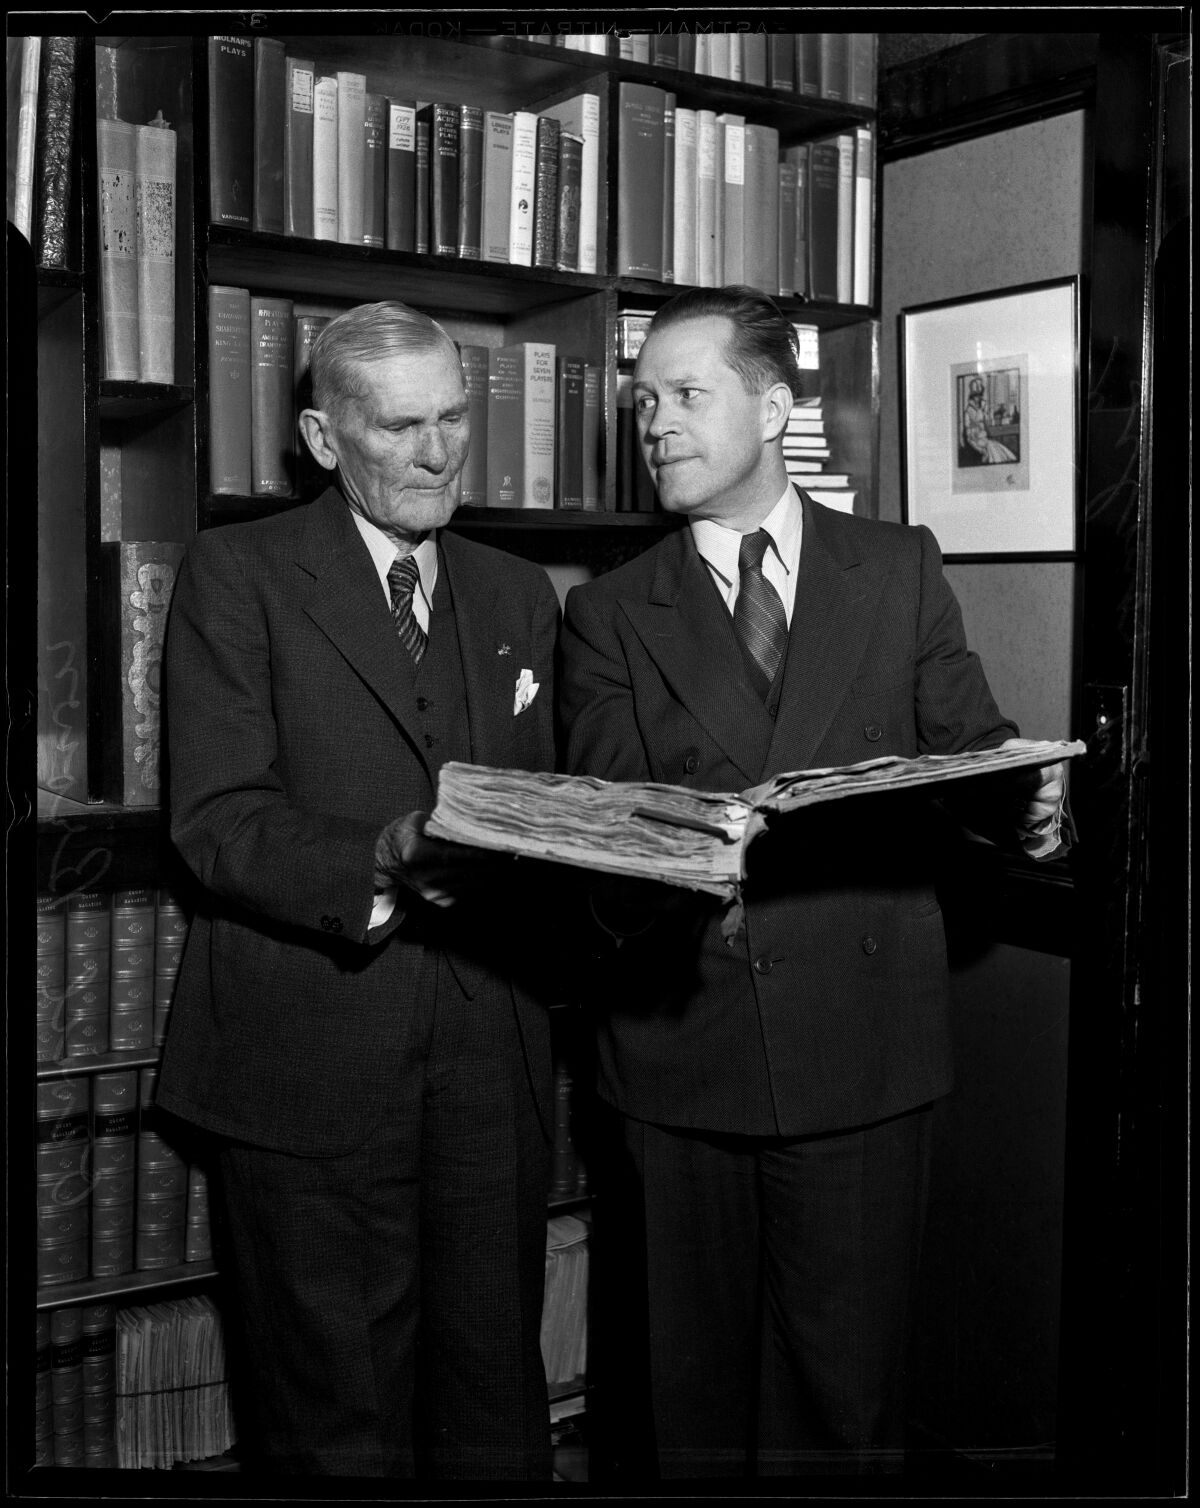 En una foto en blanco y negro, dos hombres están parados frente a un librero, uno de los cuales sostiene un gran libro abierto. 